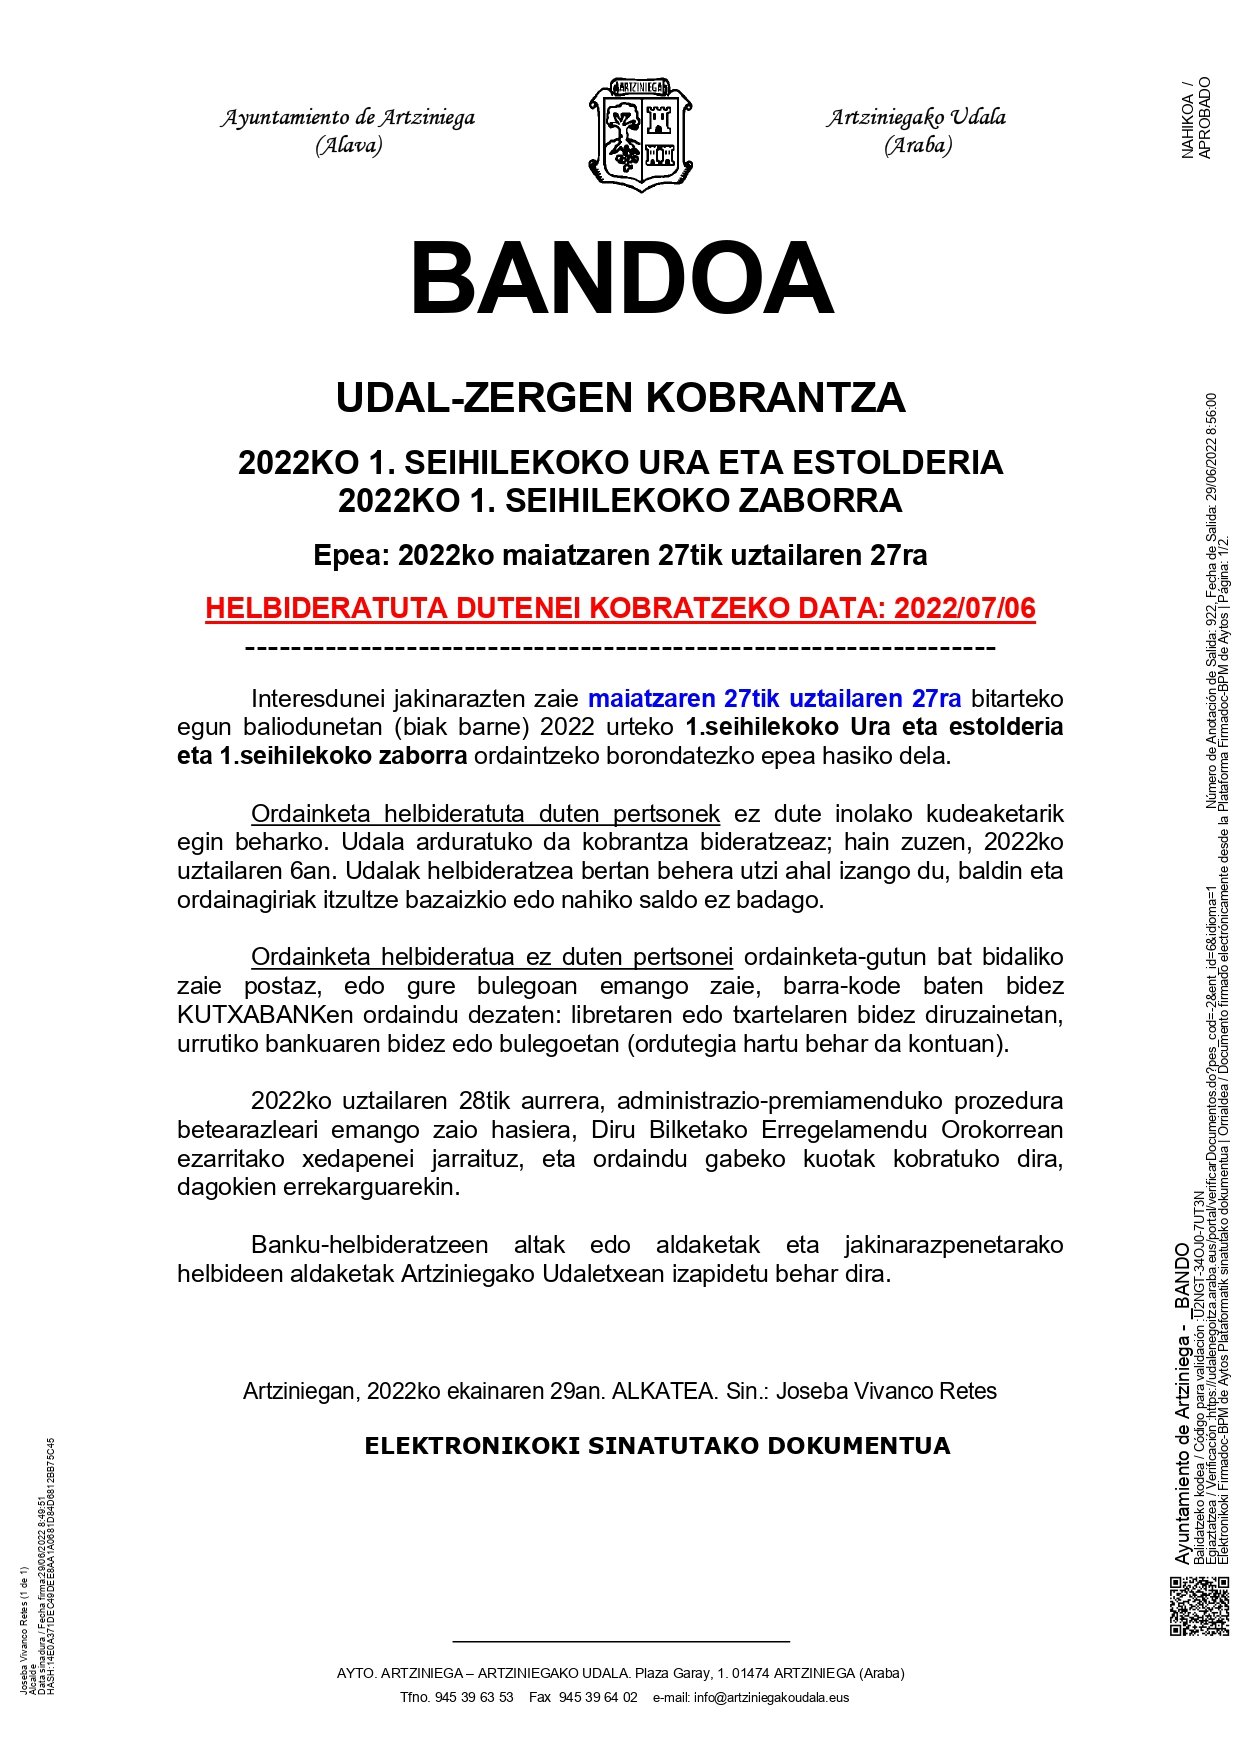 BANDOA: UDAL-ZERGEN KOBRANTZA